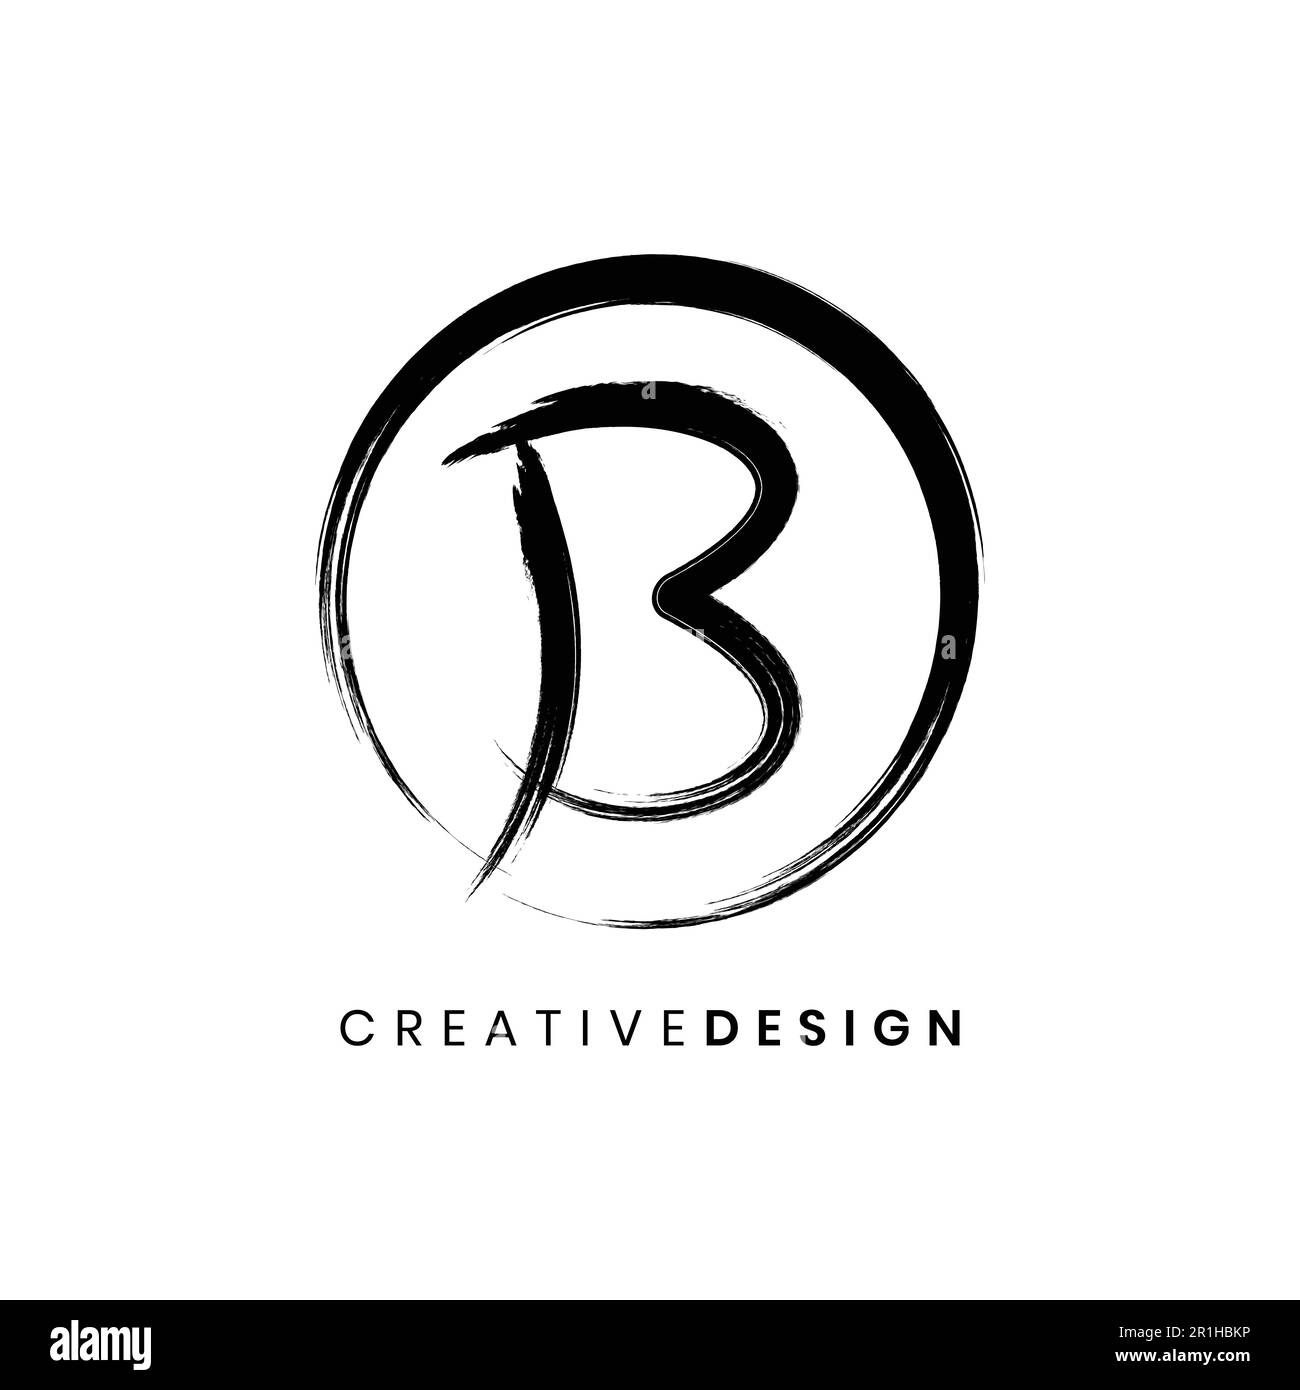 Creative letter B logo brush stroke vector illustration Stock Vector